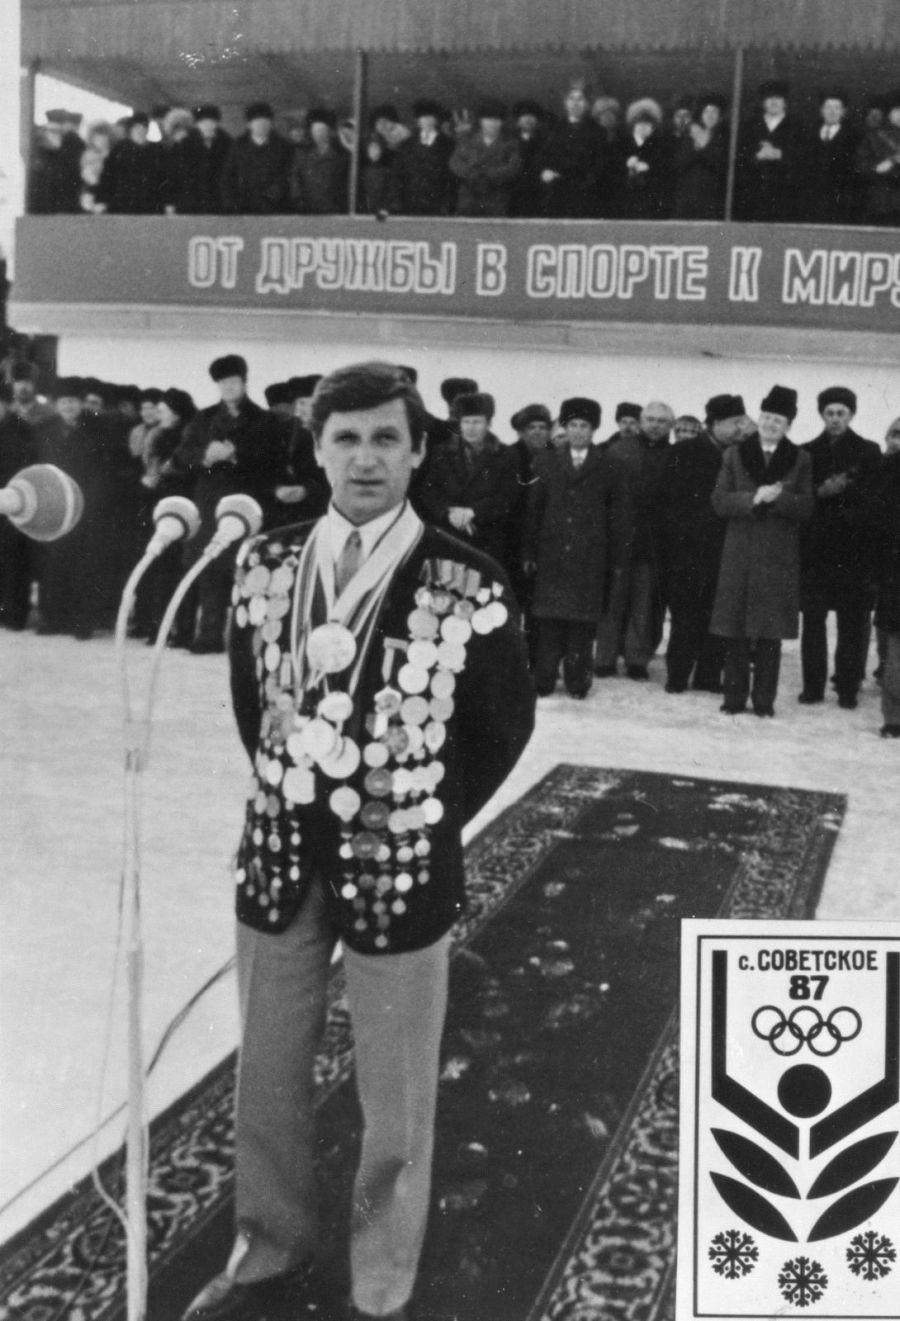 Летопись сельских олимпиад Алтайского края. IV зимняя. Советское, 1987 год (фото)